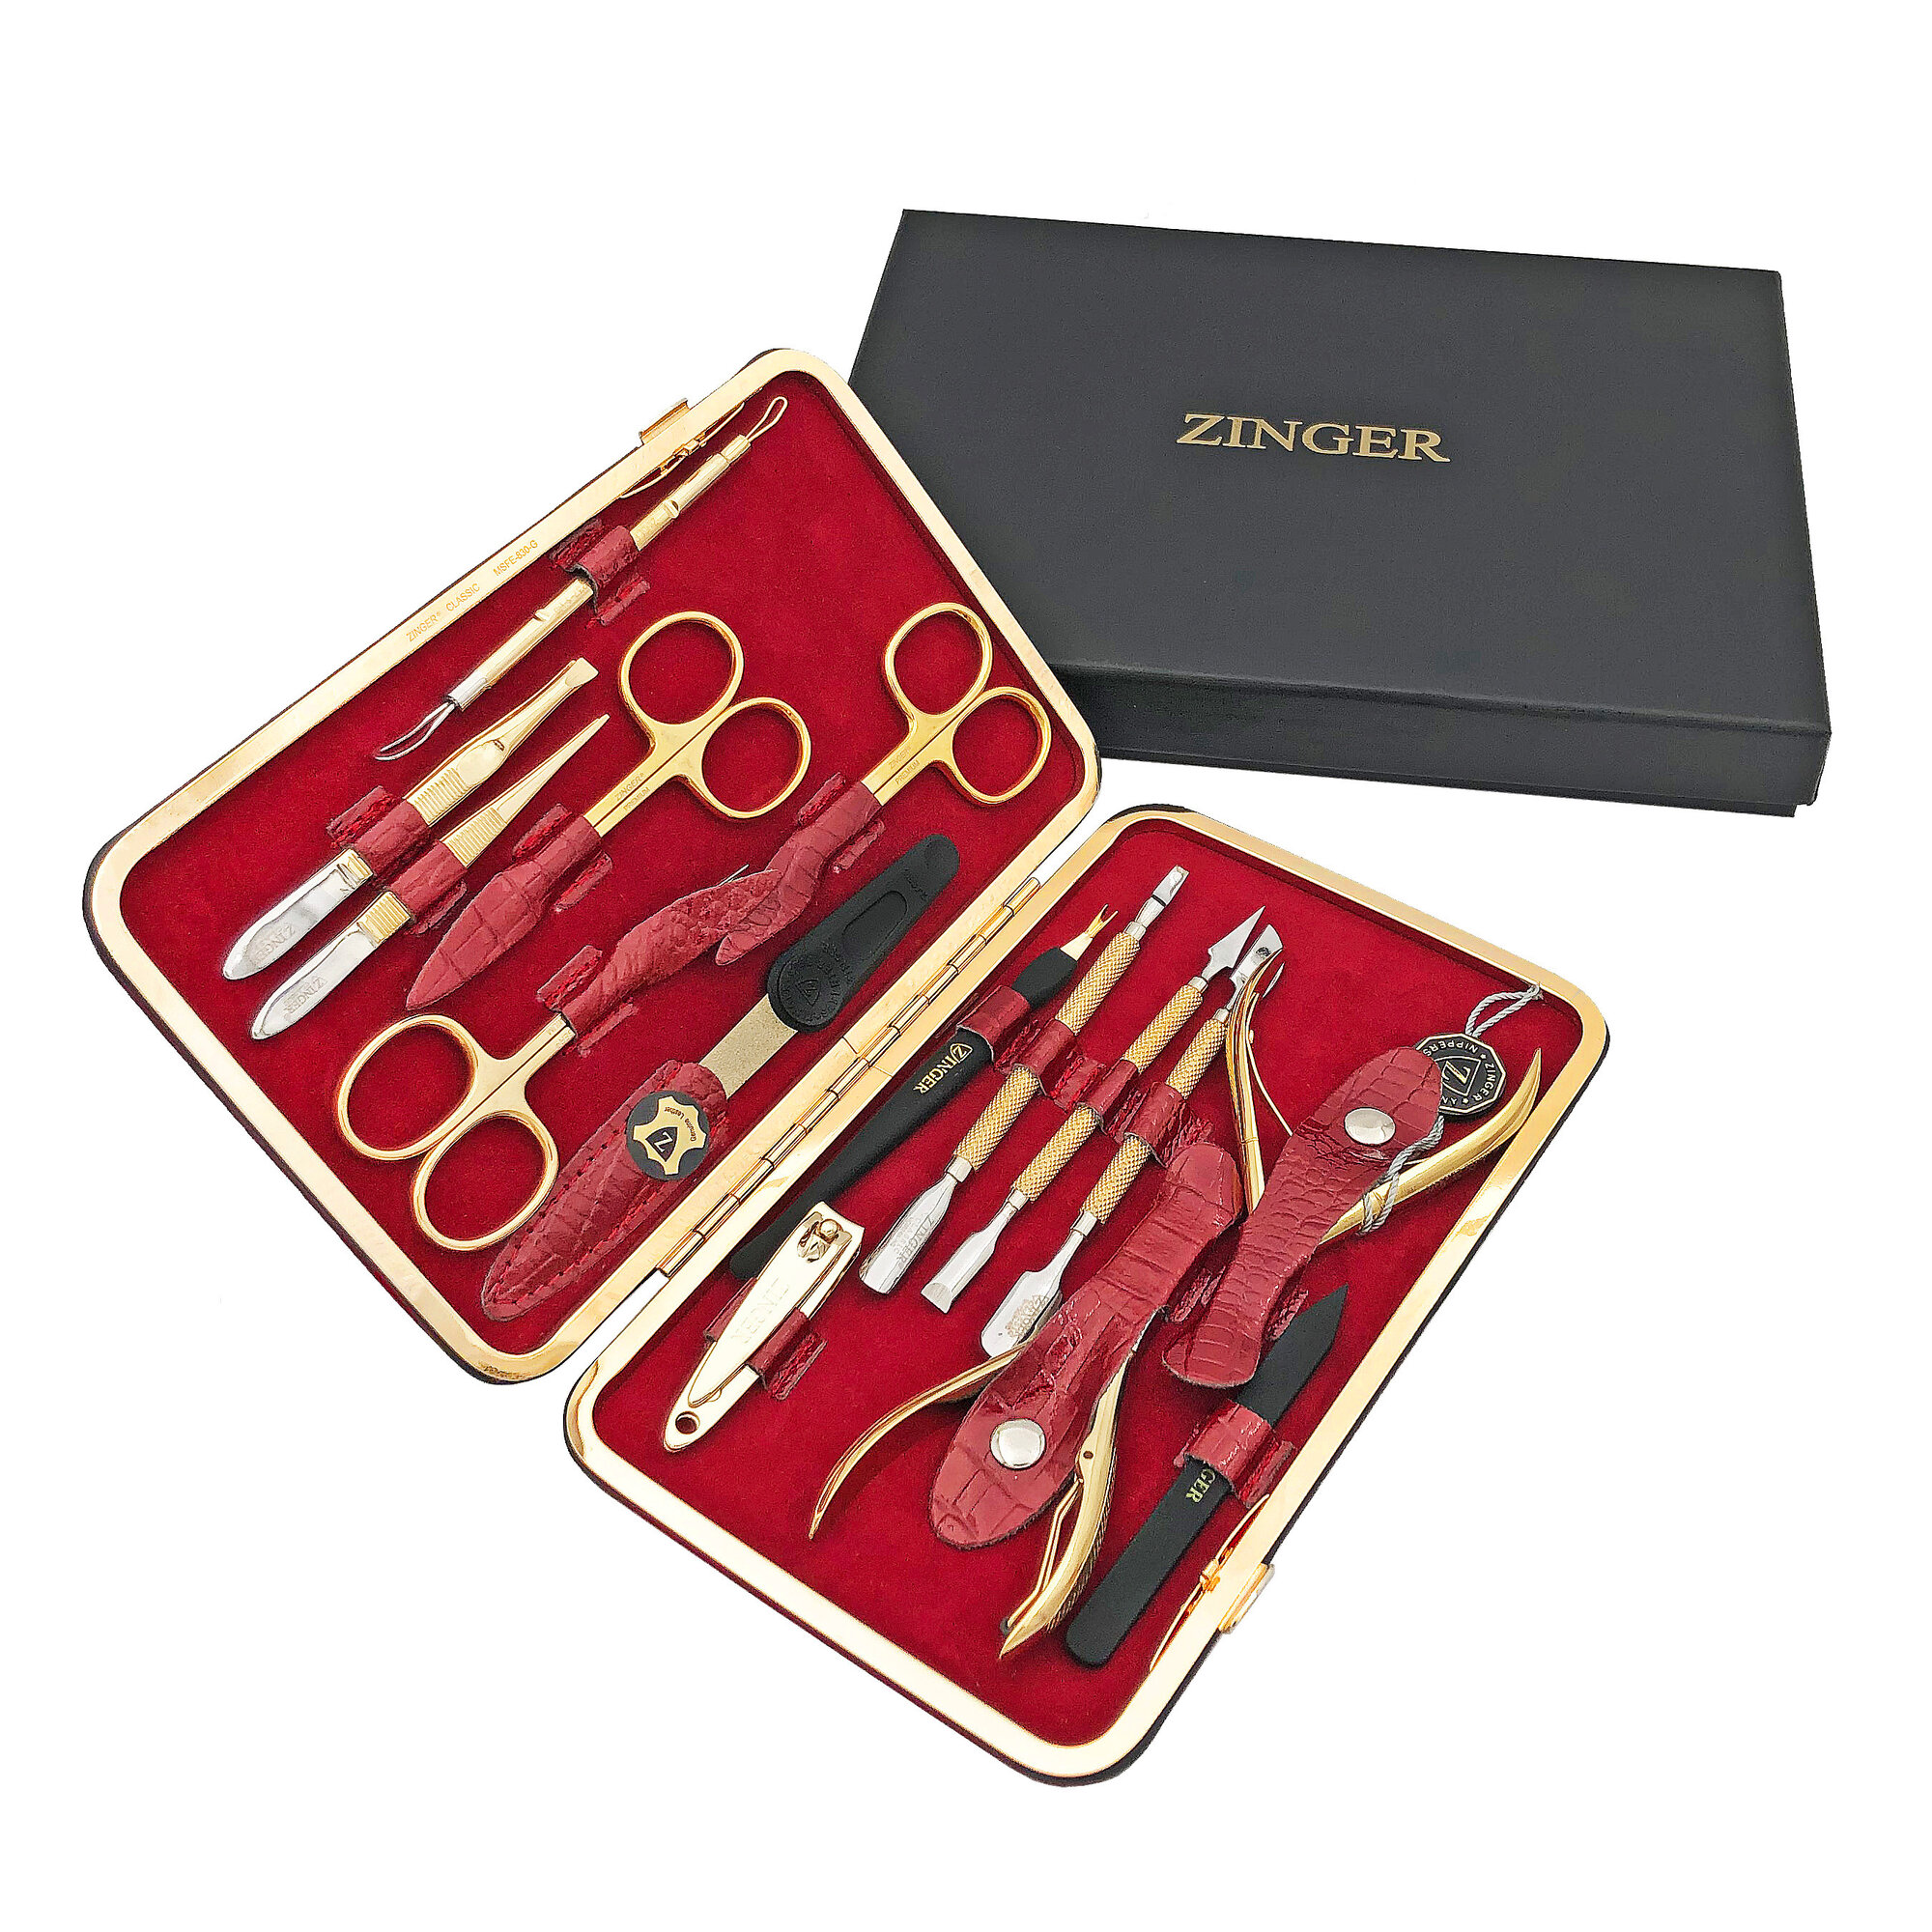 Маникюрный набор Zinger MSFE-830 G, 15 предметов, позолоченный/красный